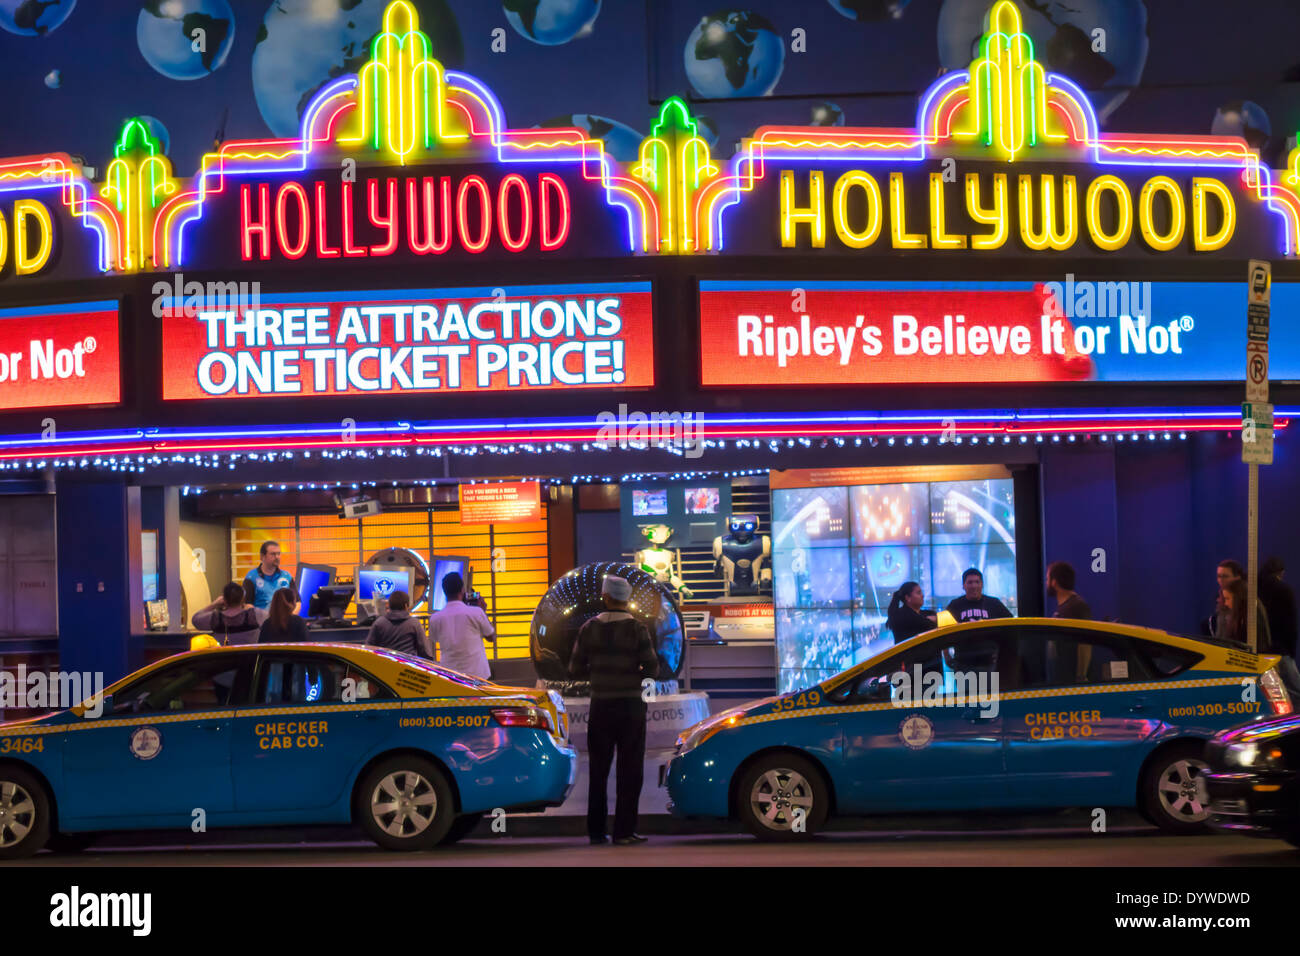 Los Angeles California,LA,Hollywood Boulevard,industrie cinématographique,Hollywood Walk of Fame,Ripley's Believe IT or Not,musée,néon,panneau,marquise,entrée,taxi, Banque D'Images